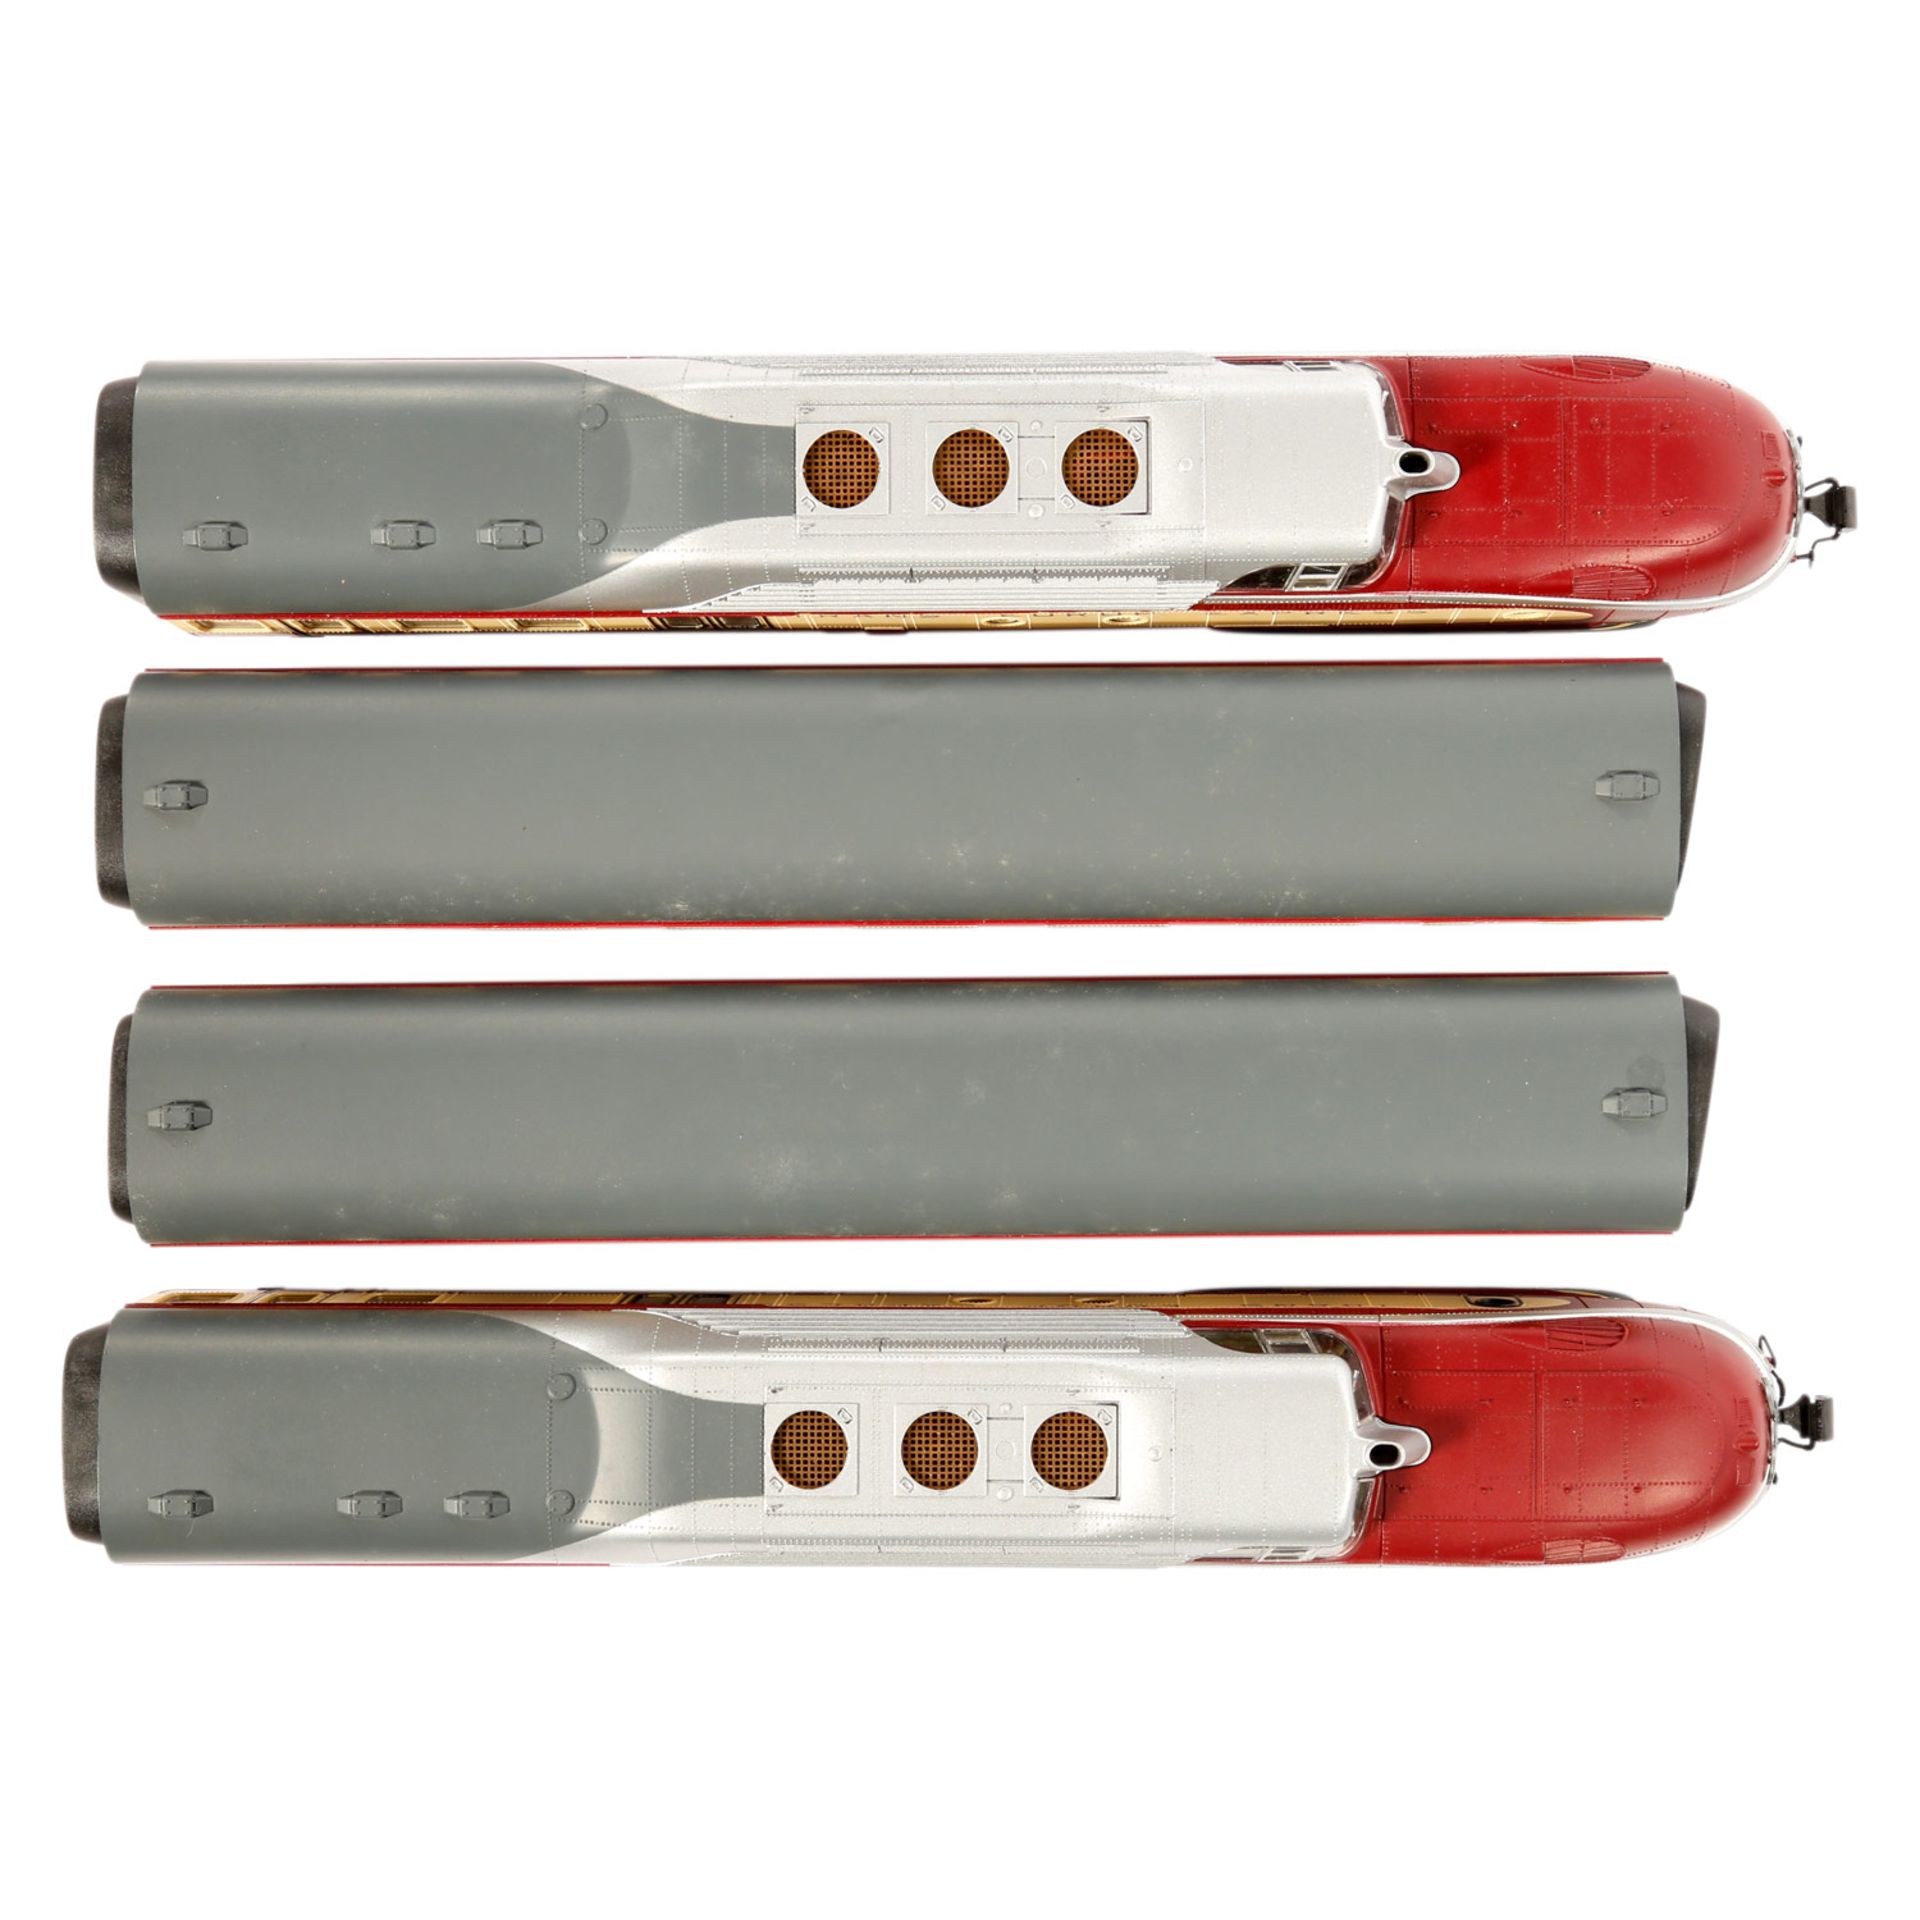 ROCO TEE-Dieseltriebzug 14183A, Spur H0, Kunststoff-Gehäuse, beige/rot, 4-teilig, bestehend aus 2 - Bild 4 aus 5